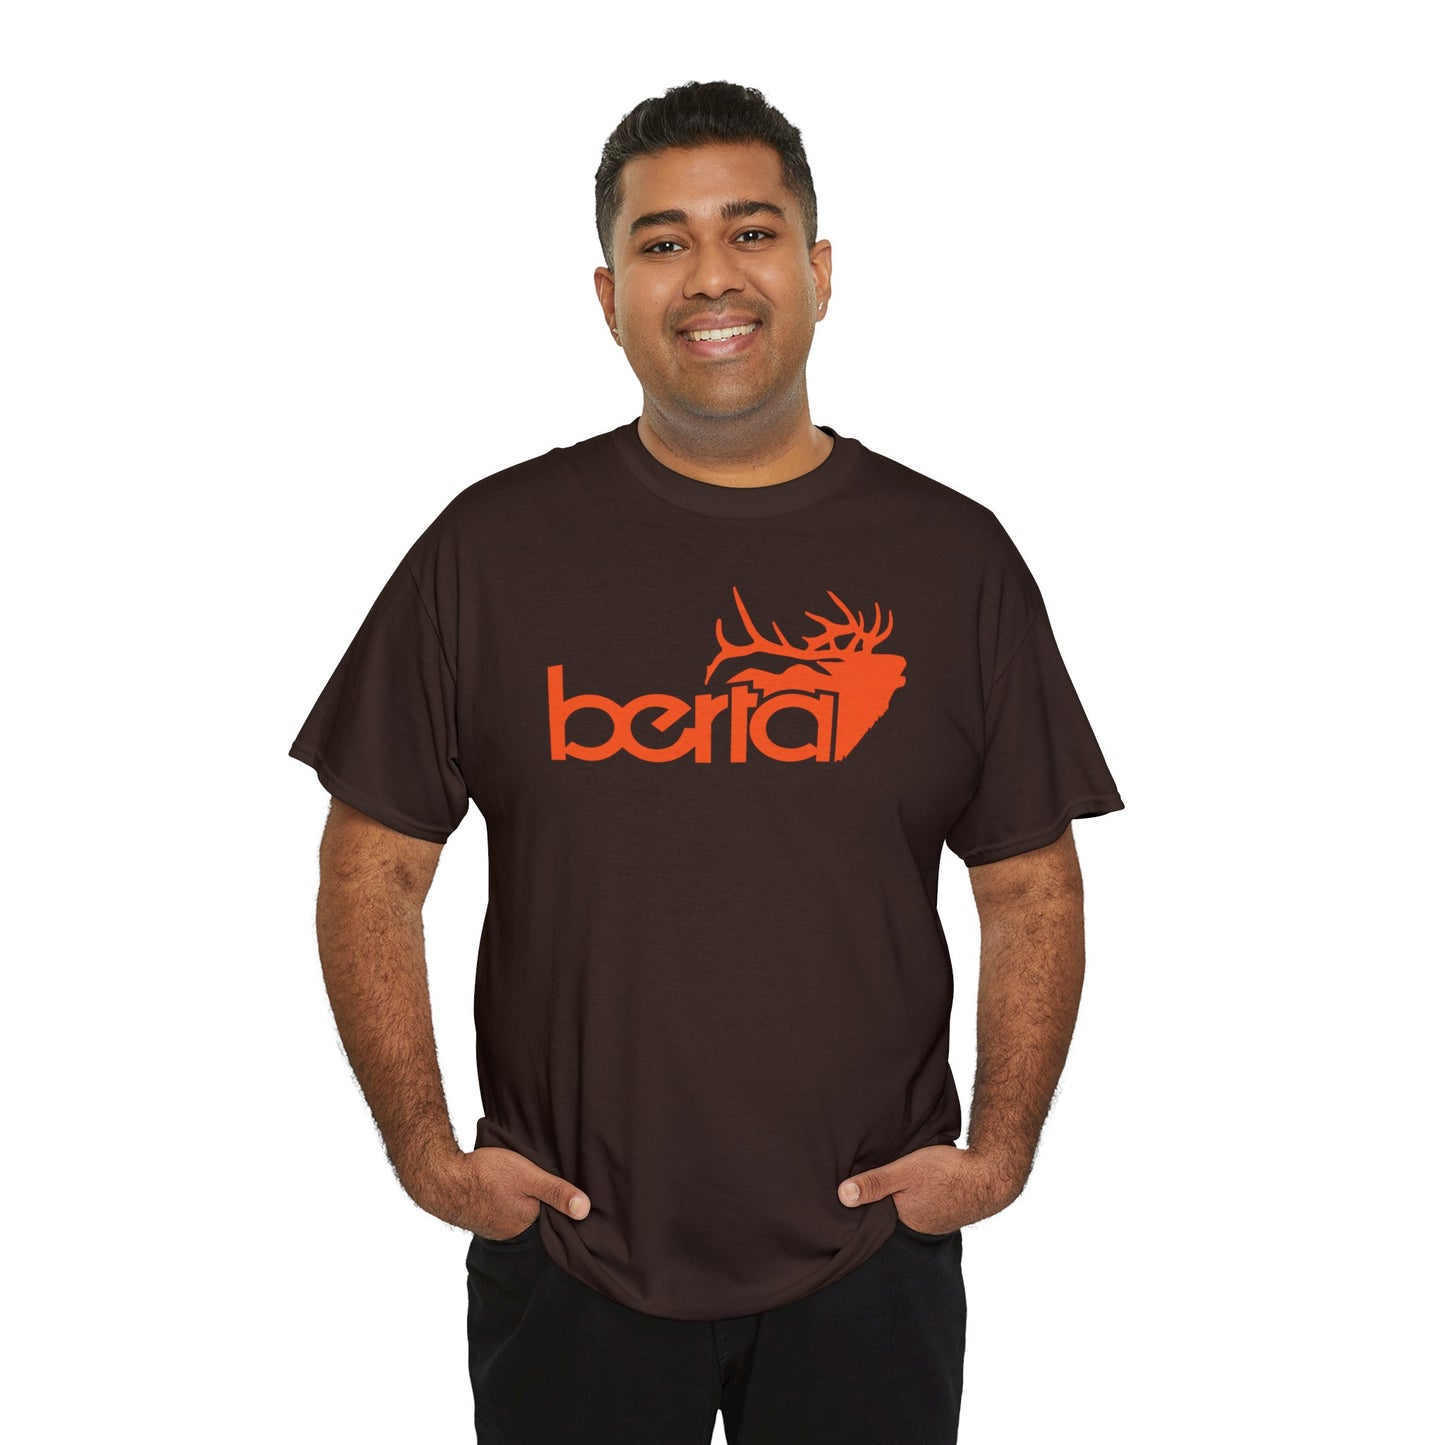 BERTA-BULL Unisex Heavy Cotton Tee